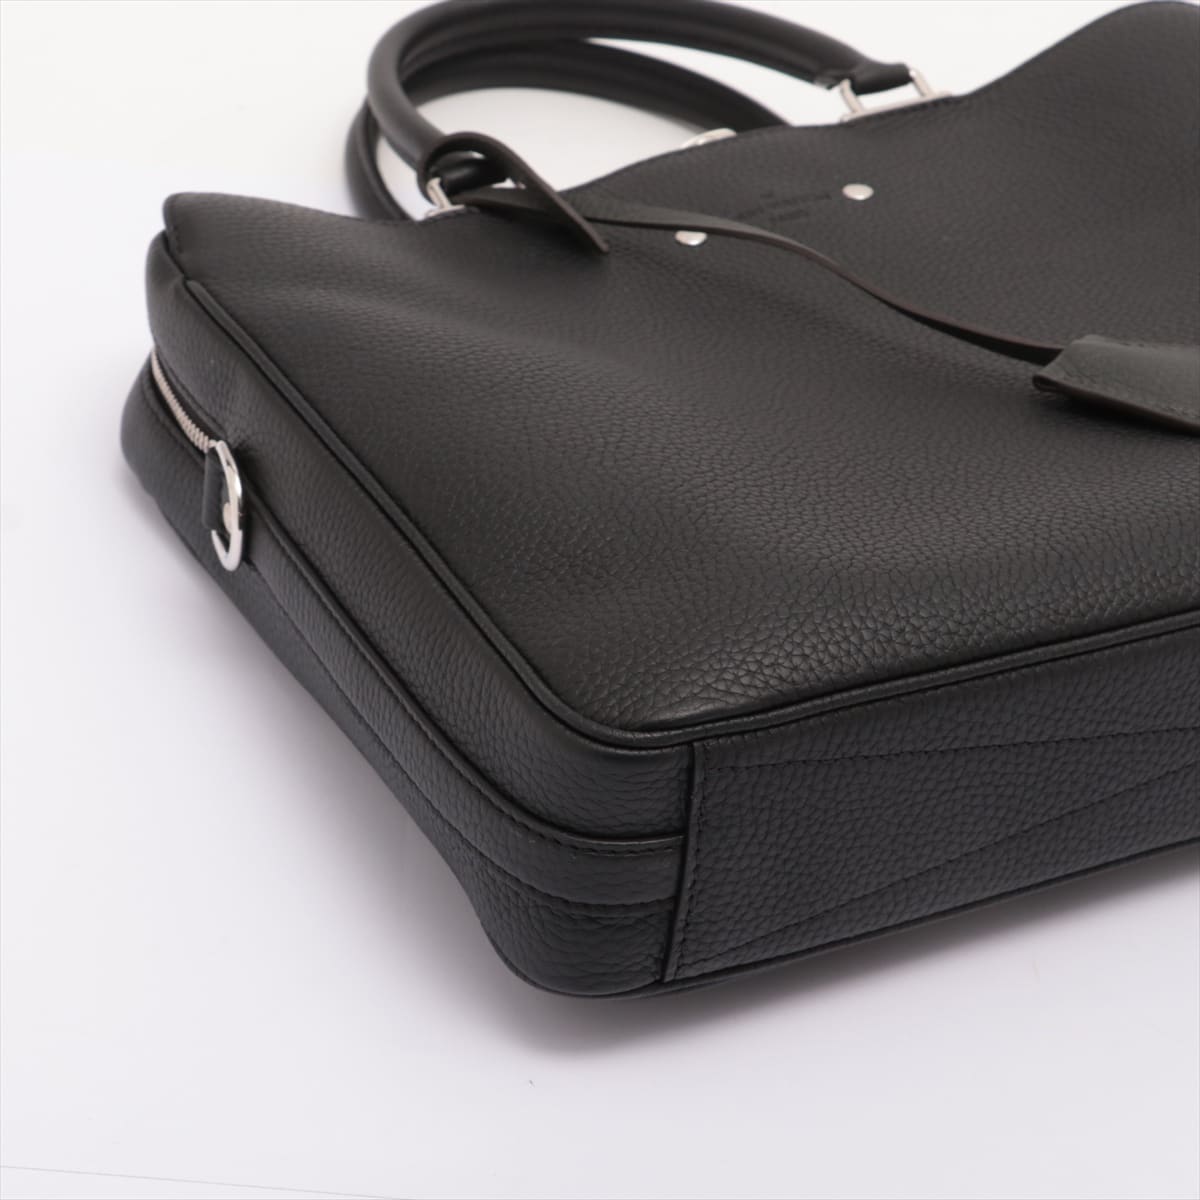 Louis Vuitton Taurillon Armando brief case M54381